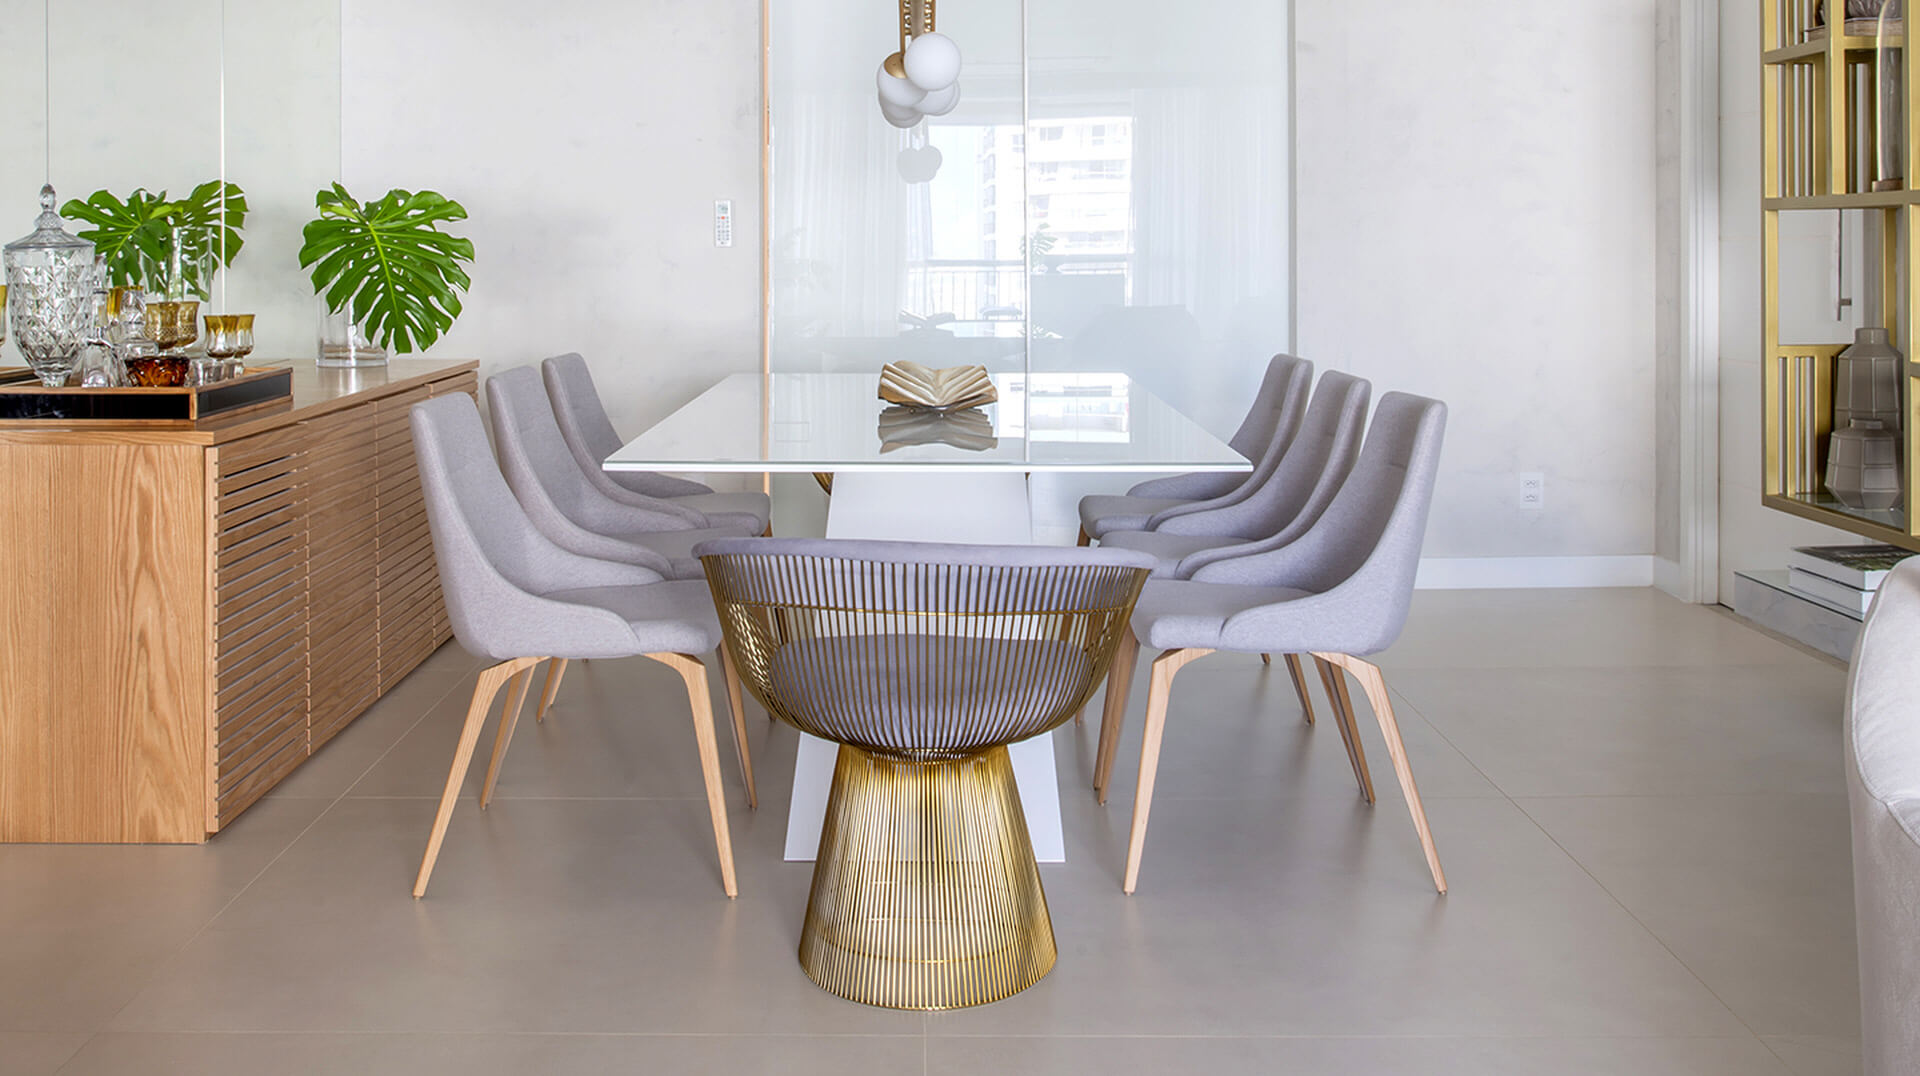 Stoly, stolové desky | Speciální výroba | Koupelny ČERO